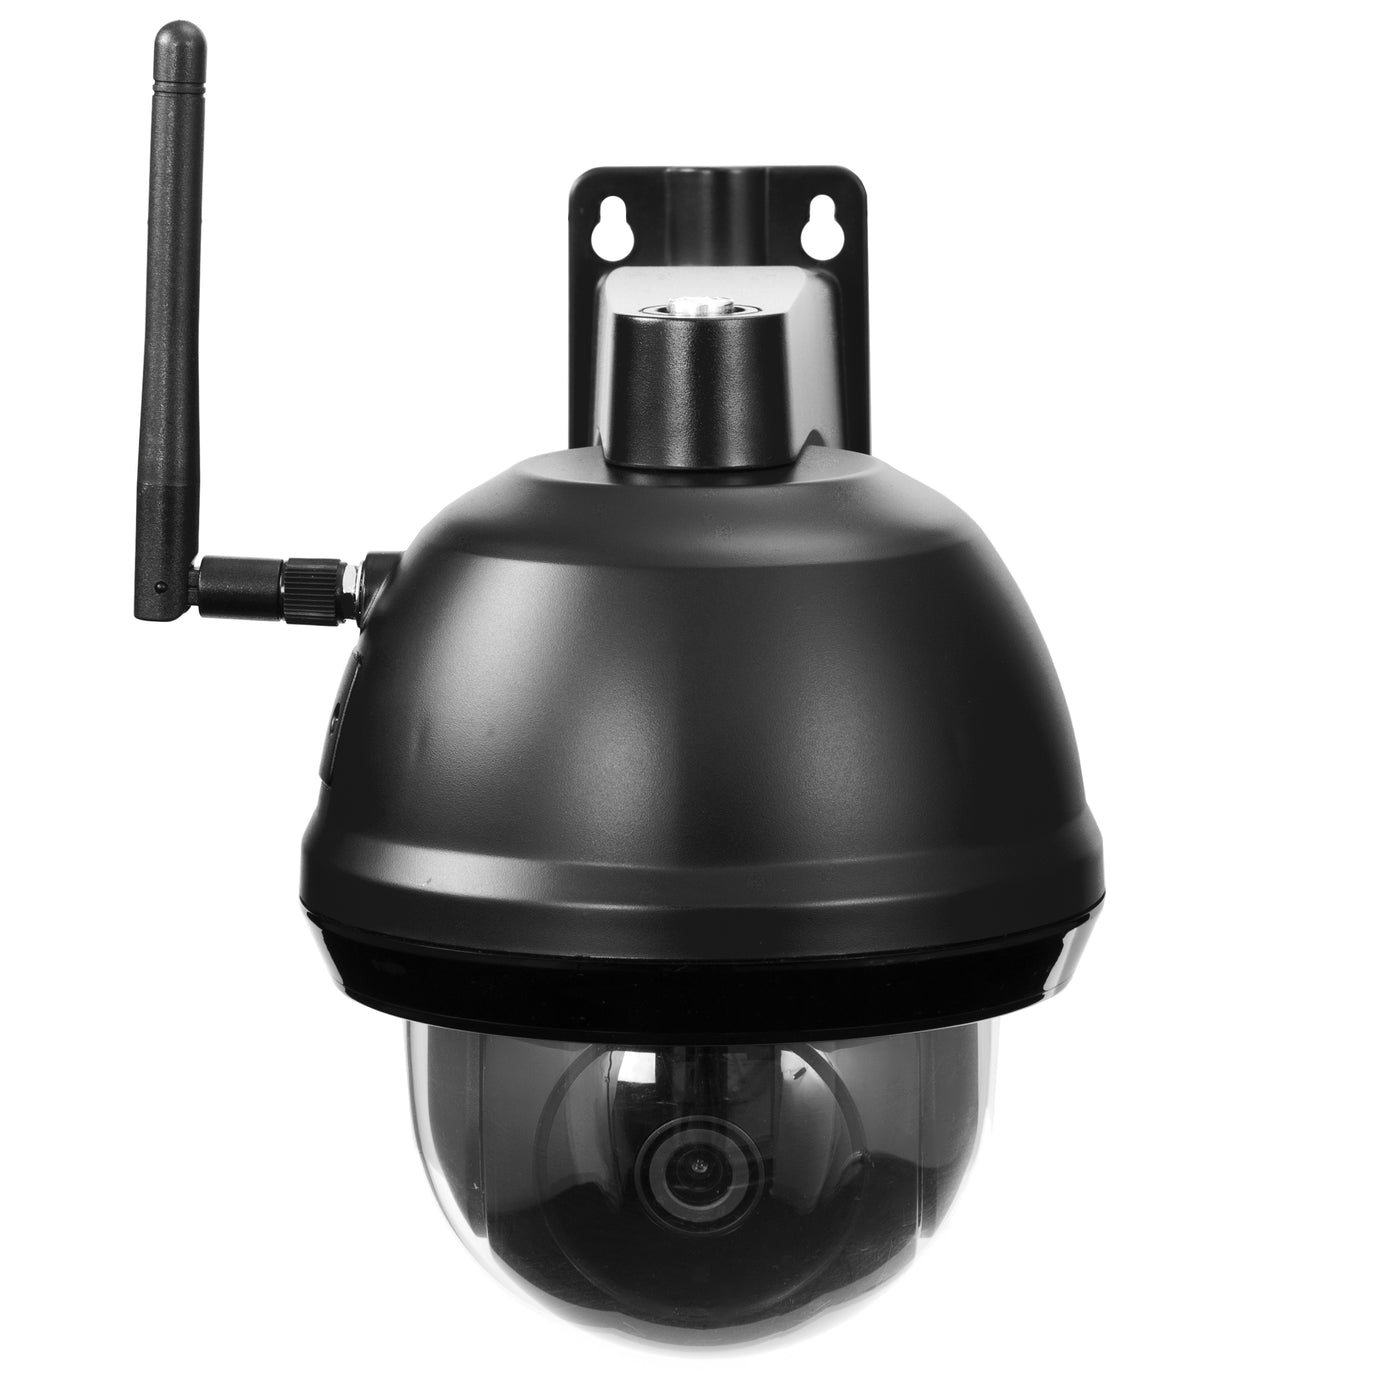 Alecto DVC266IP - Wifi camera voor buiten met op afstand beweegbare camera - Zwart